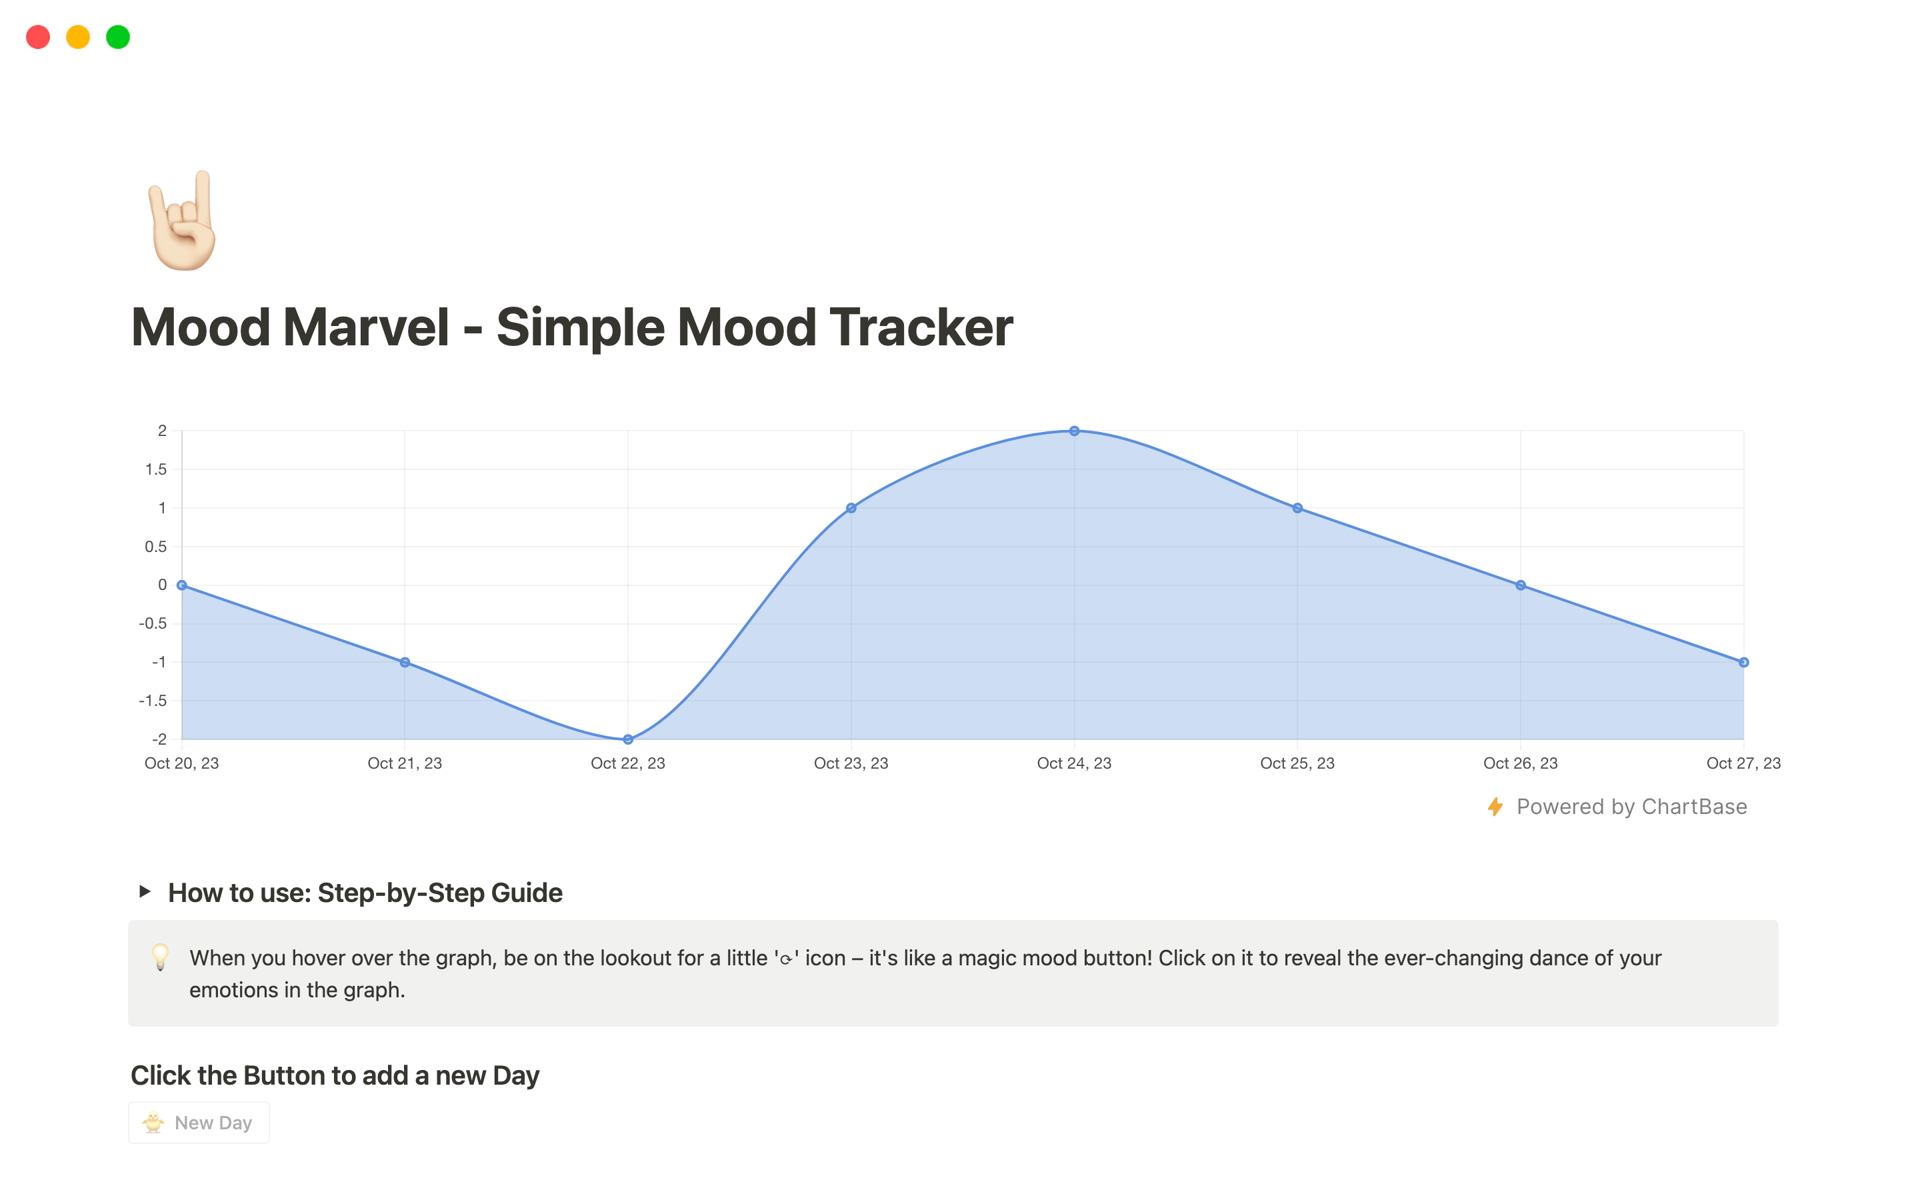 Vista previa de una plantilla para Mood Marvel - Simple Mood Tracker